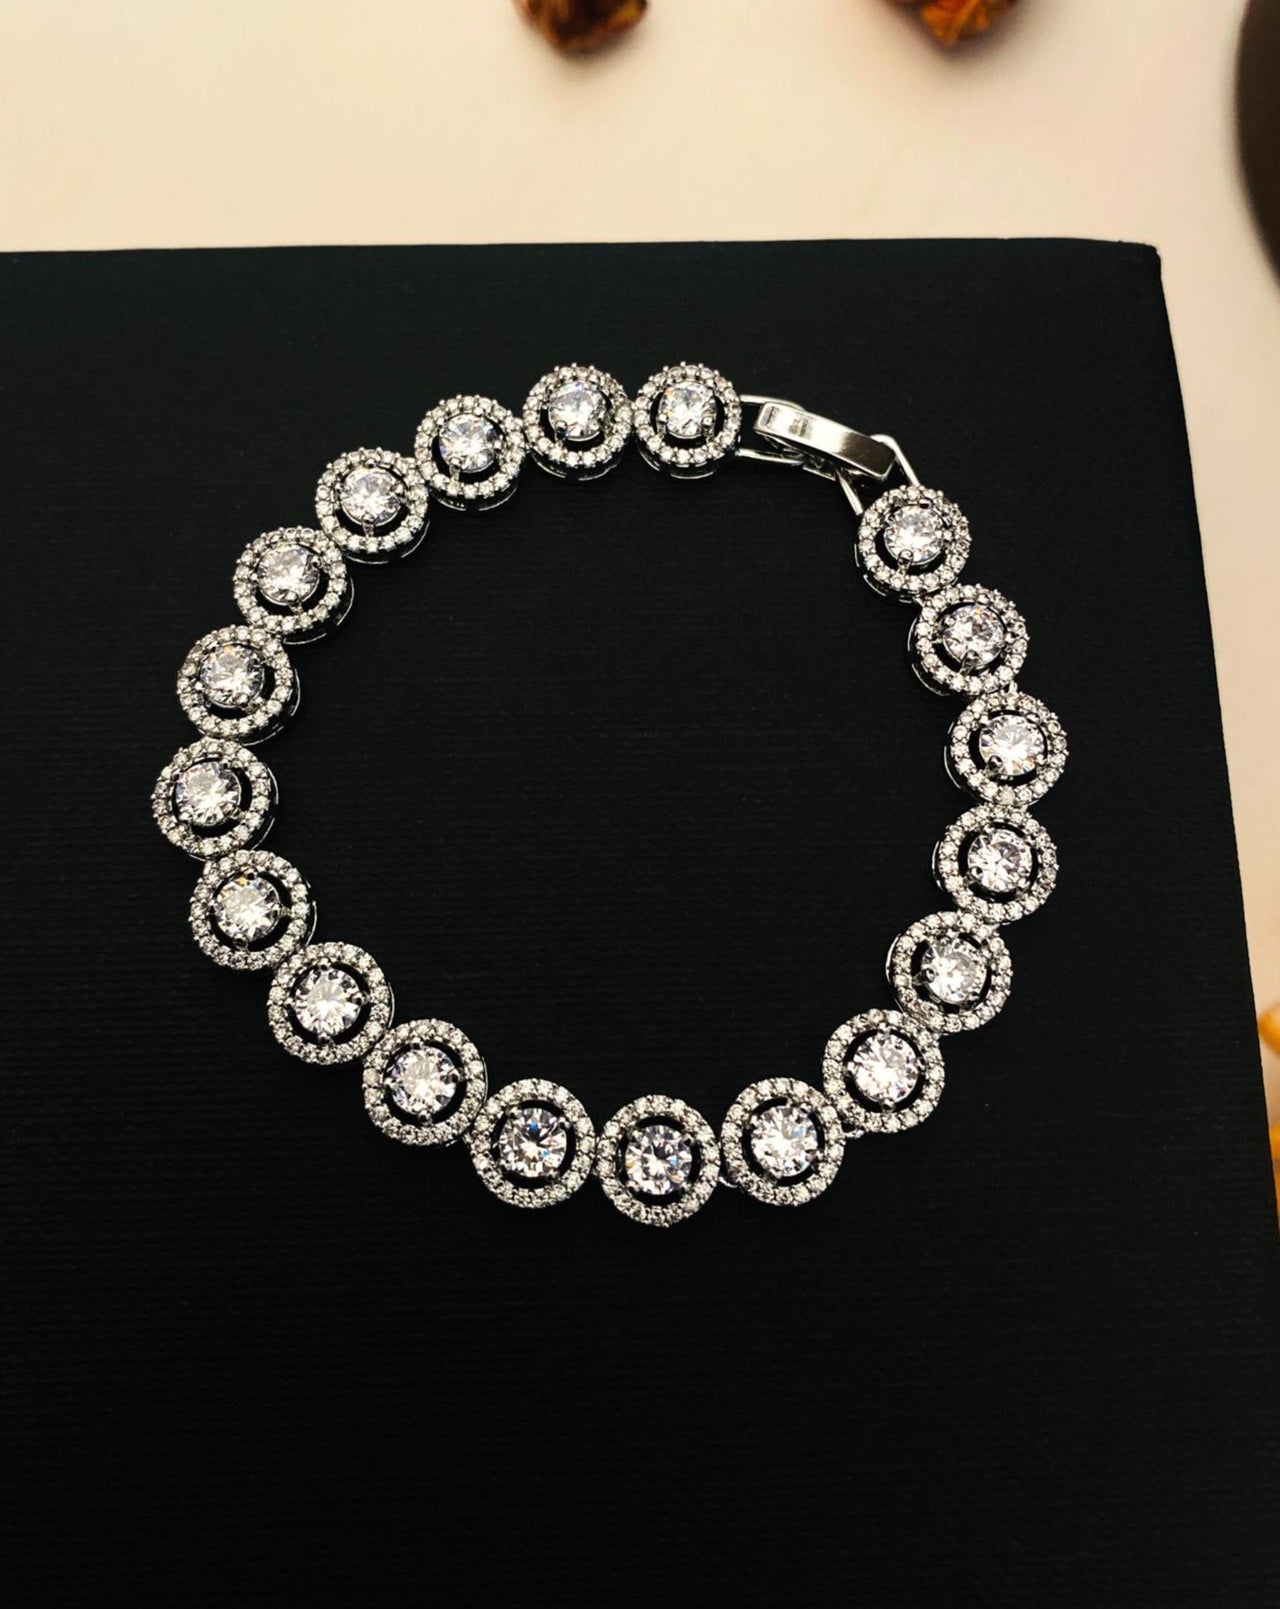 Silver Platede Cz Bracelets 